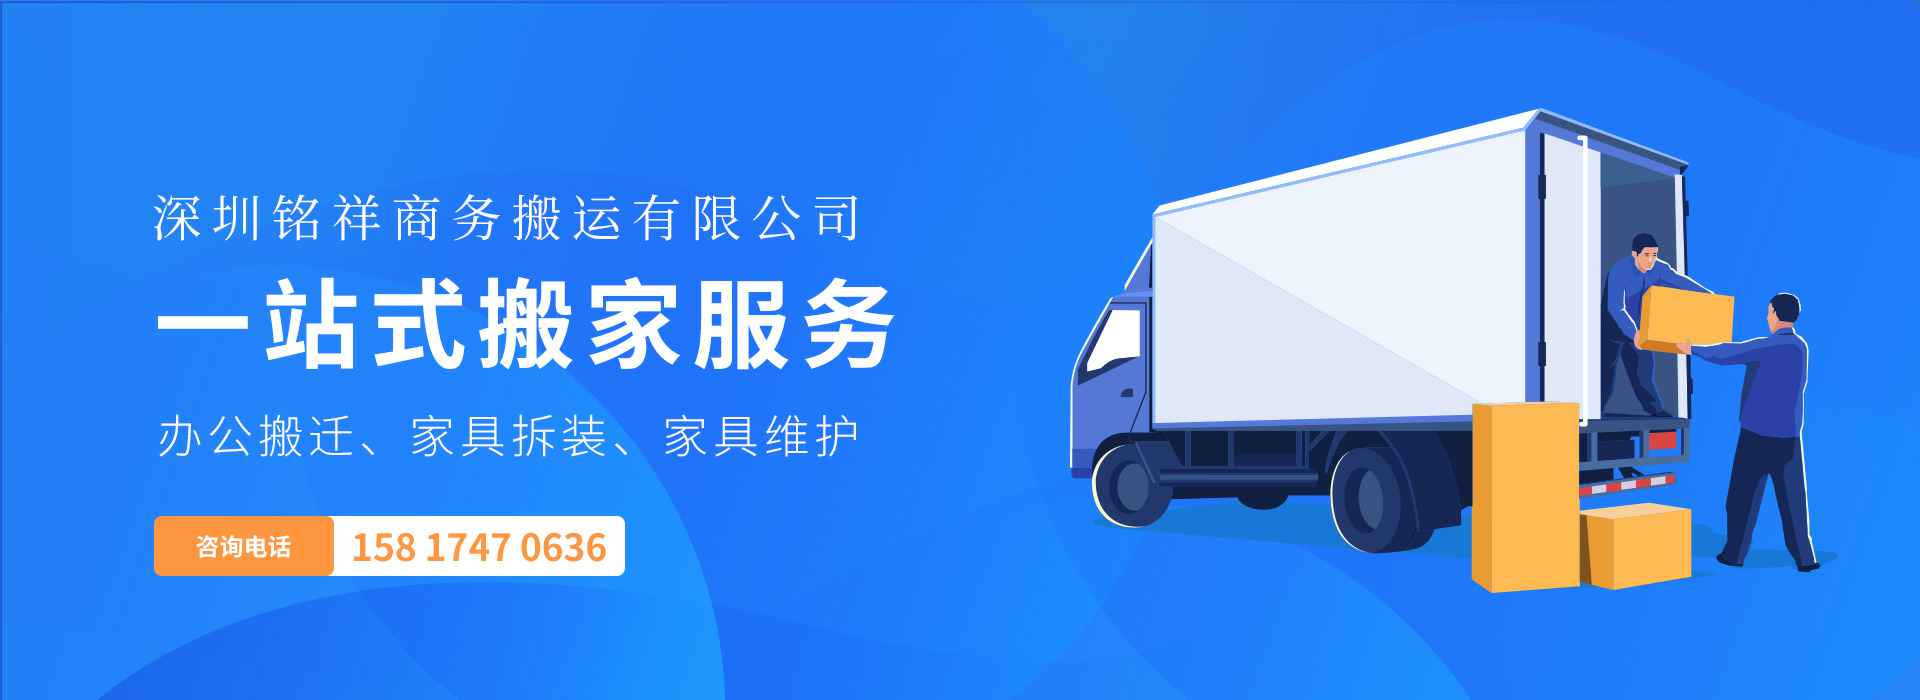 🌏半岛公司官方网站|中国有限公司-半岛公司官方网站——一站式搬家服务！